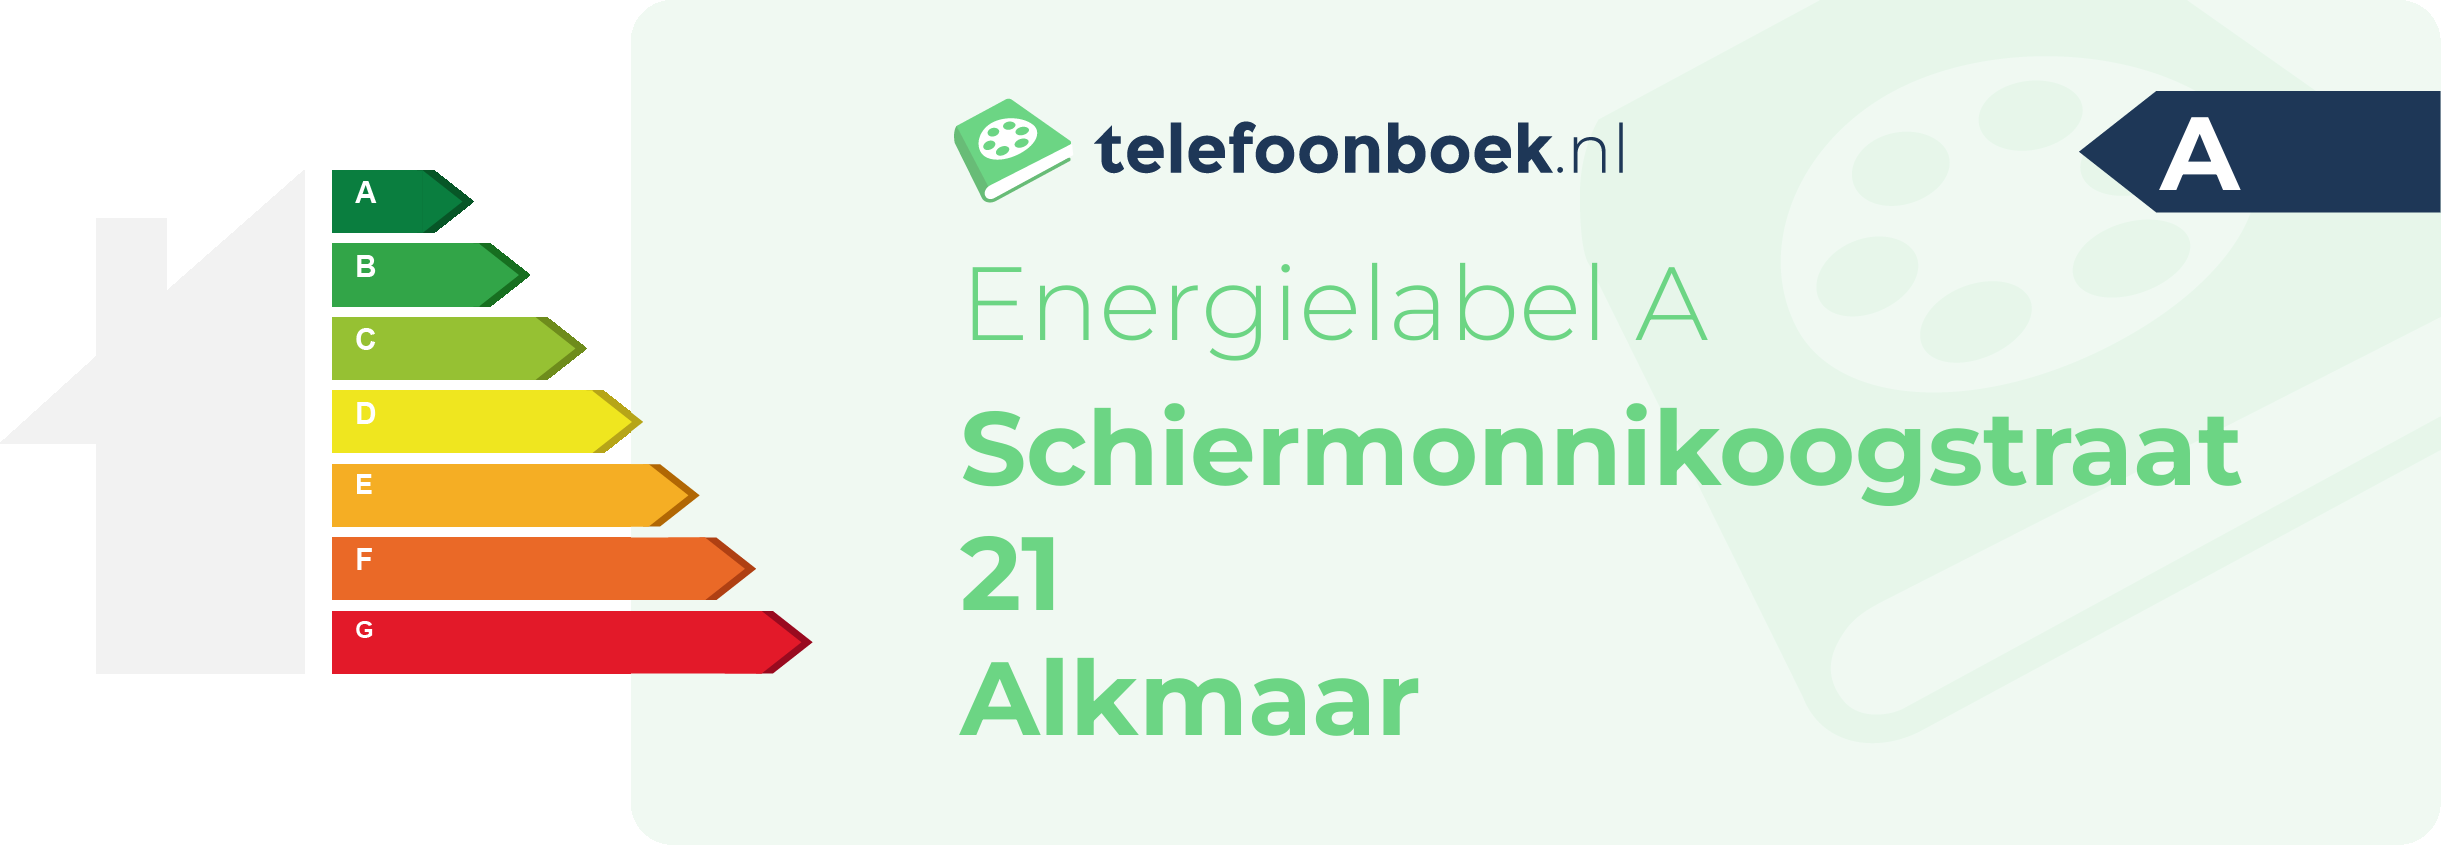 Energielabel Schiermonnikoogstraat 21 Alkmaar